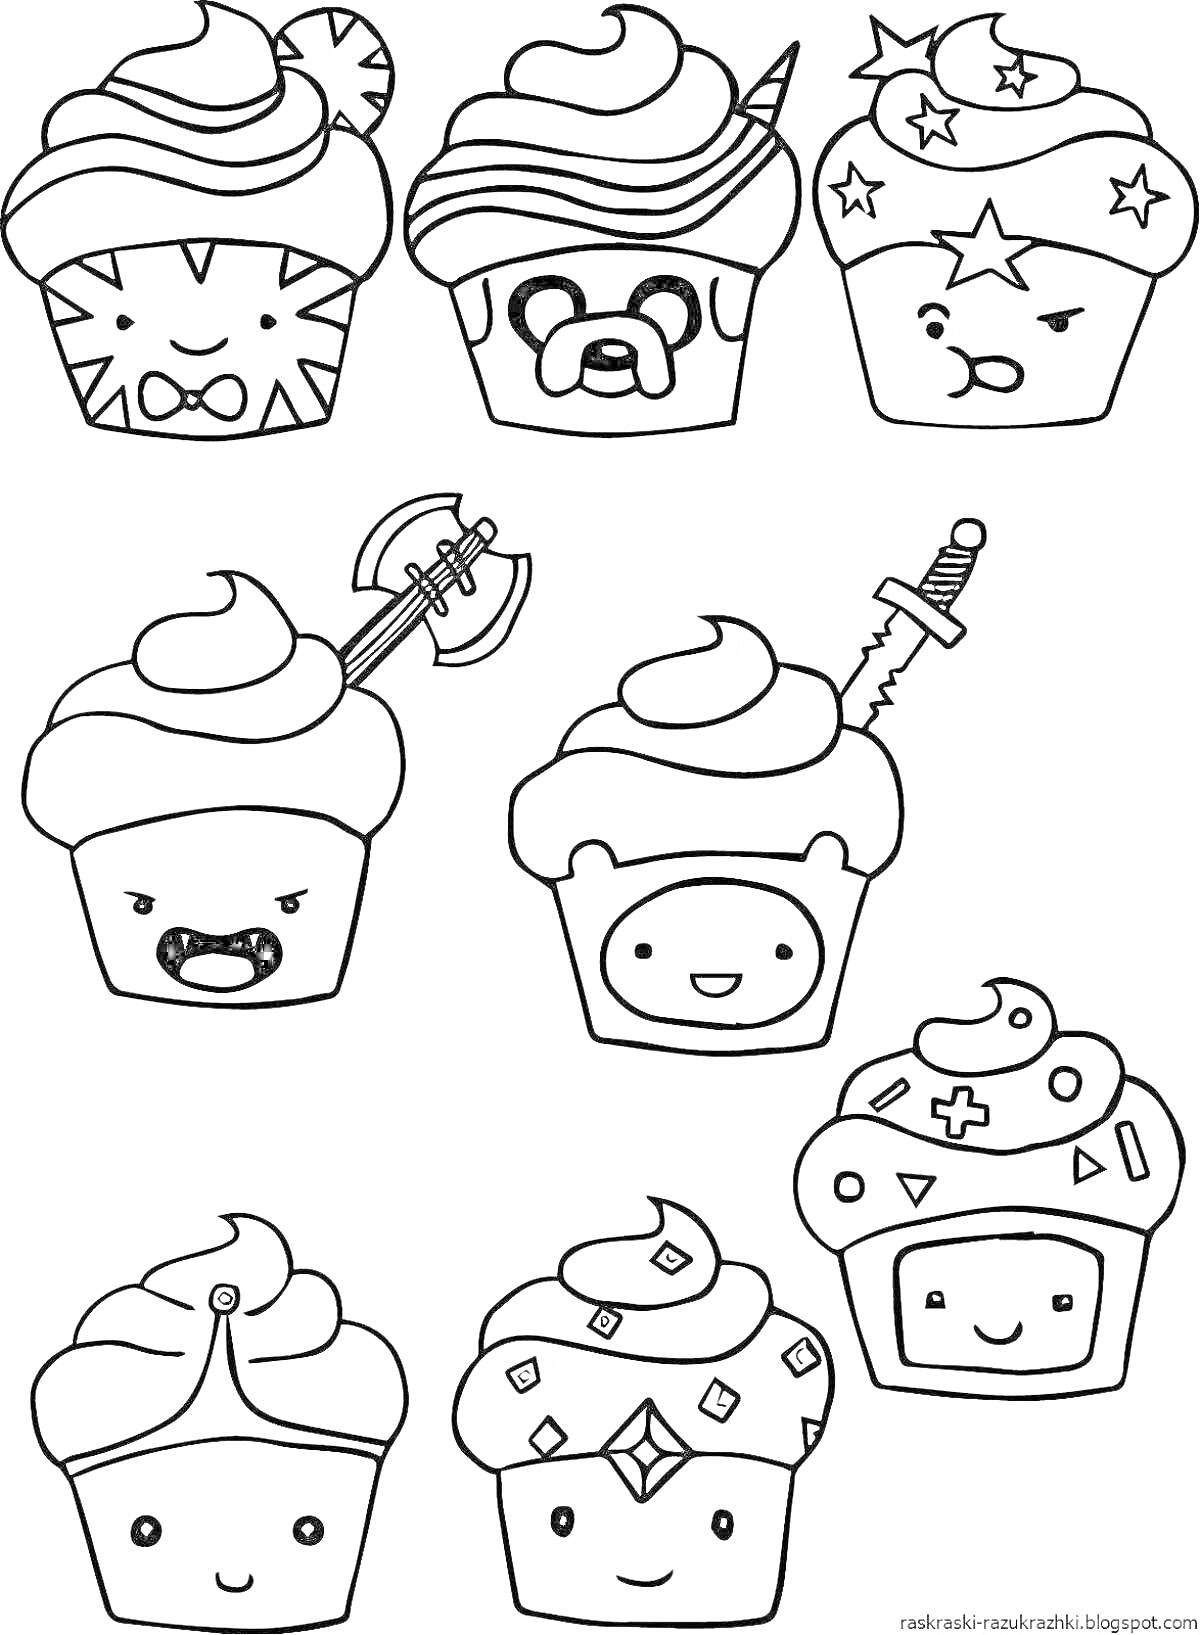 Раскраска кексы с различными лицами и аксессуарами, кекс с бейсболкой и звездочками, кекс с волчьим шлемом и топором, кекс с мечом